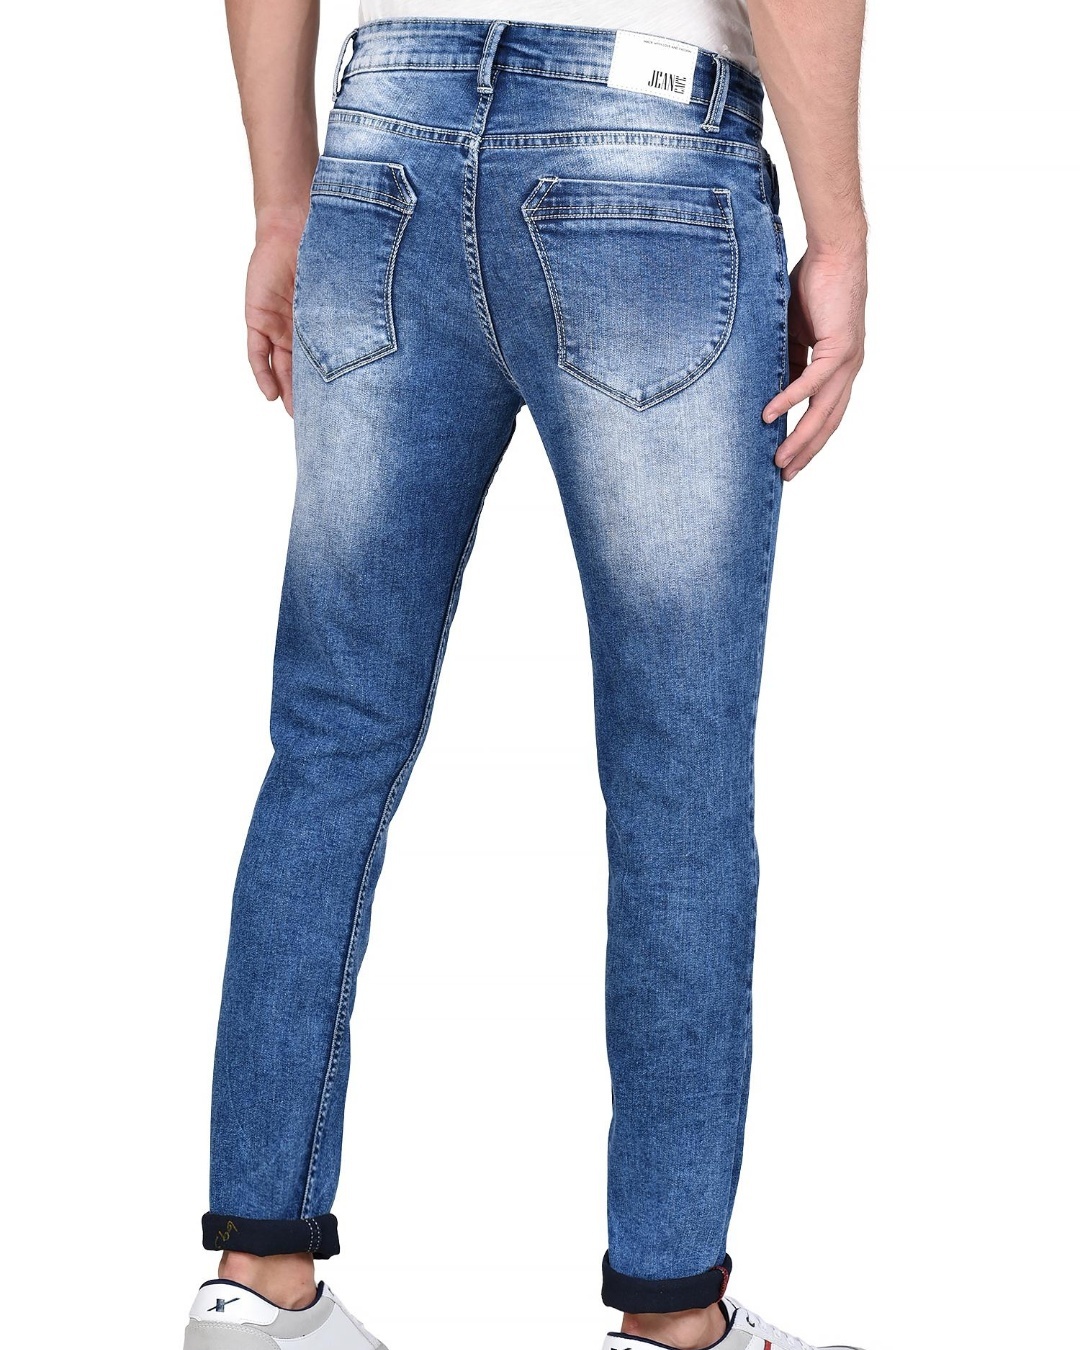 Buy Men's Blue Washed Slim Fit Jeans for Men Blue Online at Bewakoof